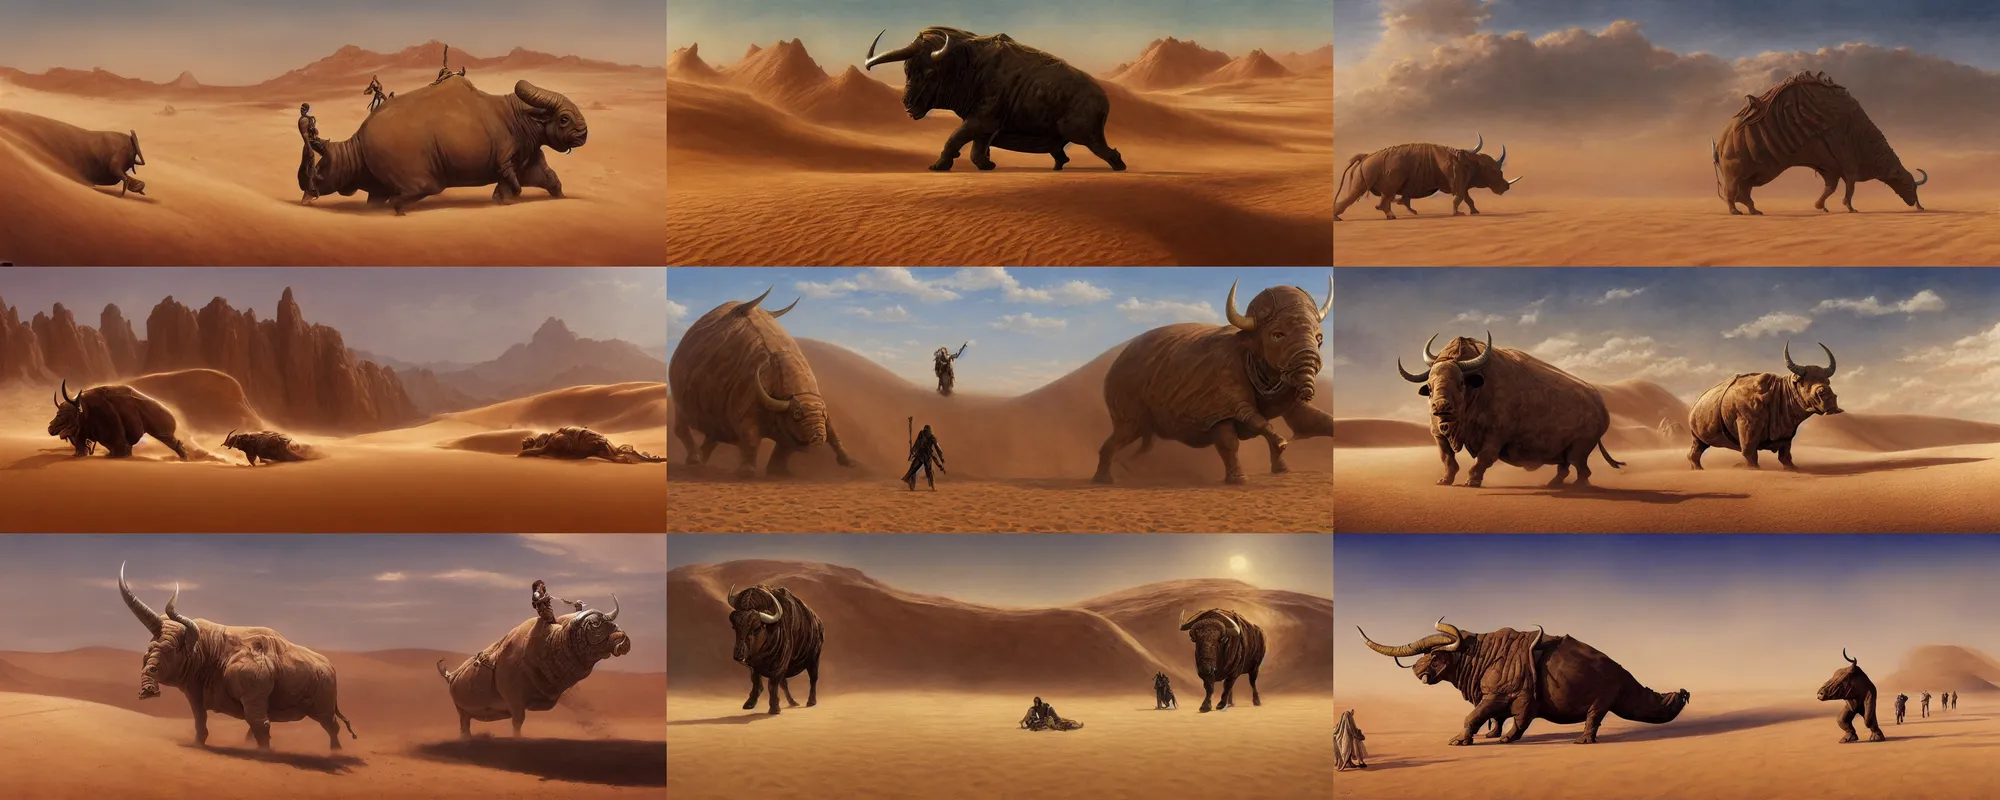 Prompt: dune movie, desert landscape, huge bull emerging from the sand, trending on artstation, by ted nasmith